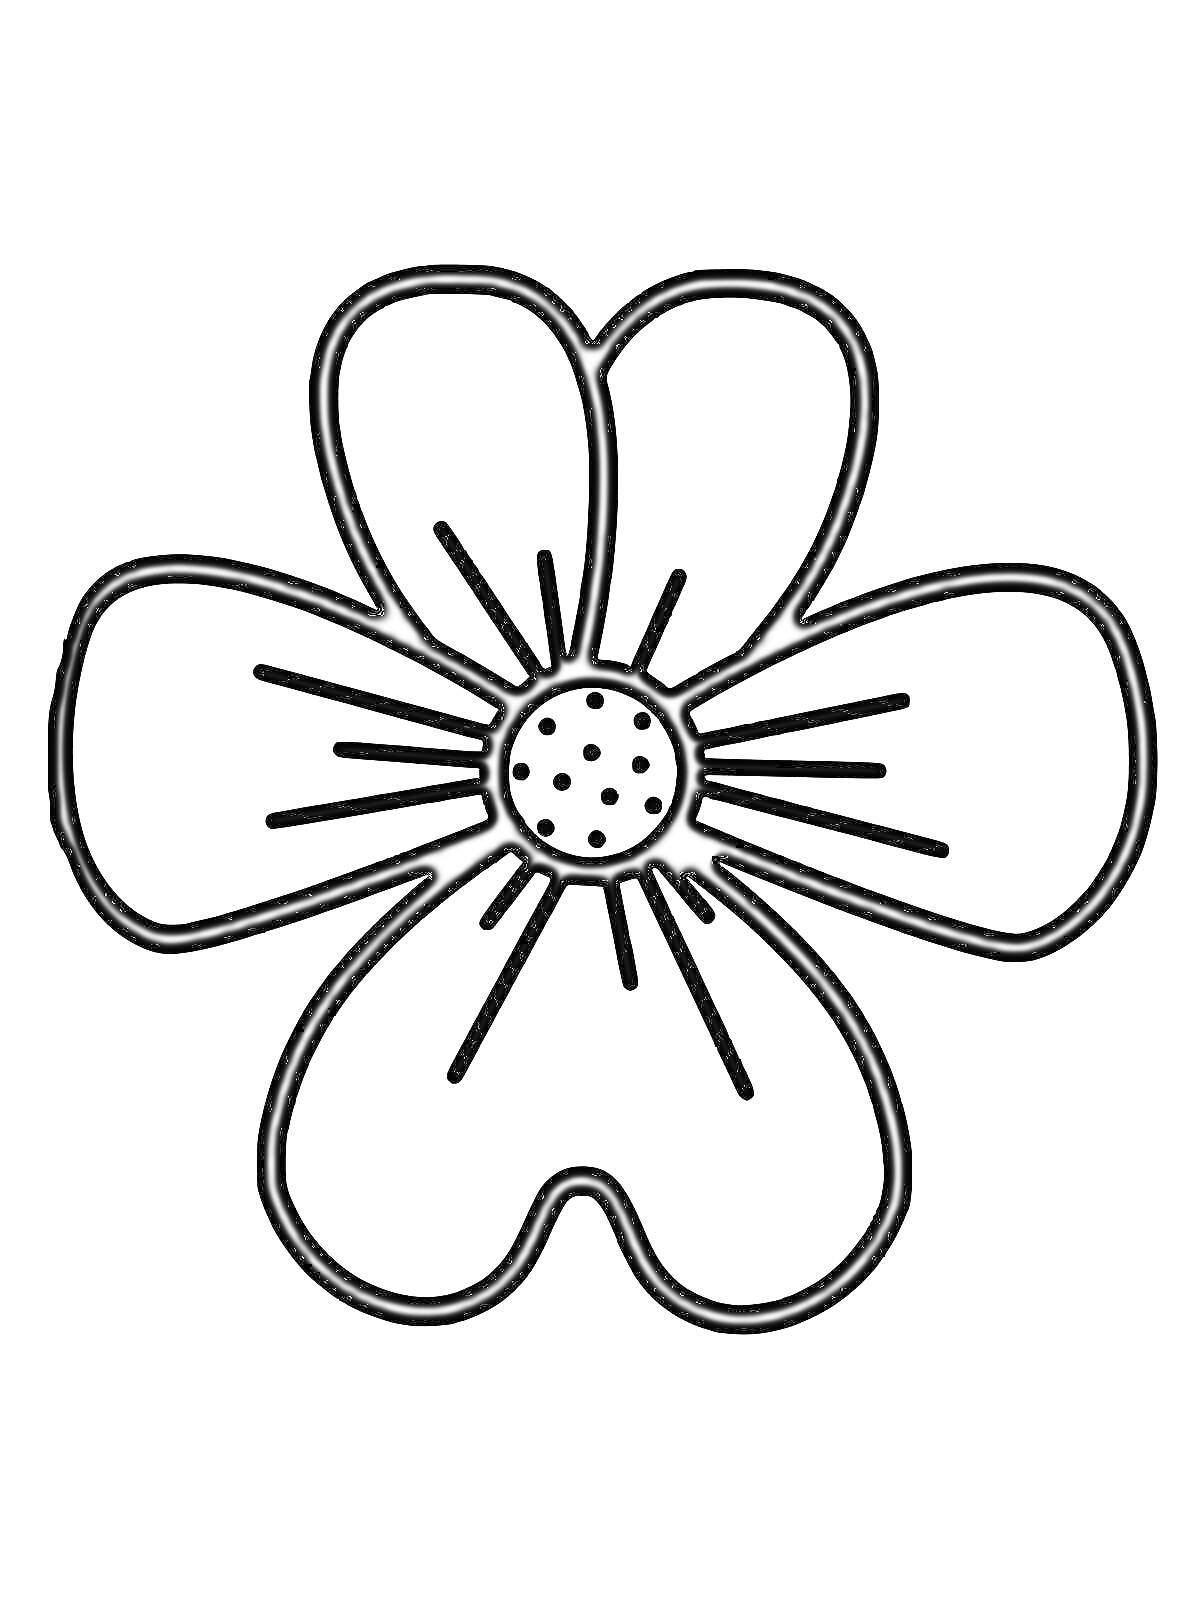 Простая раскраска цветок с пятью лепестками и точками в центре